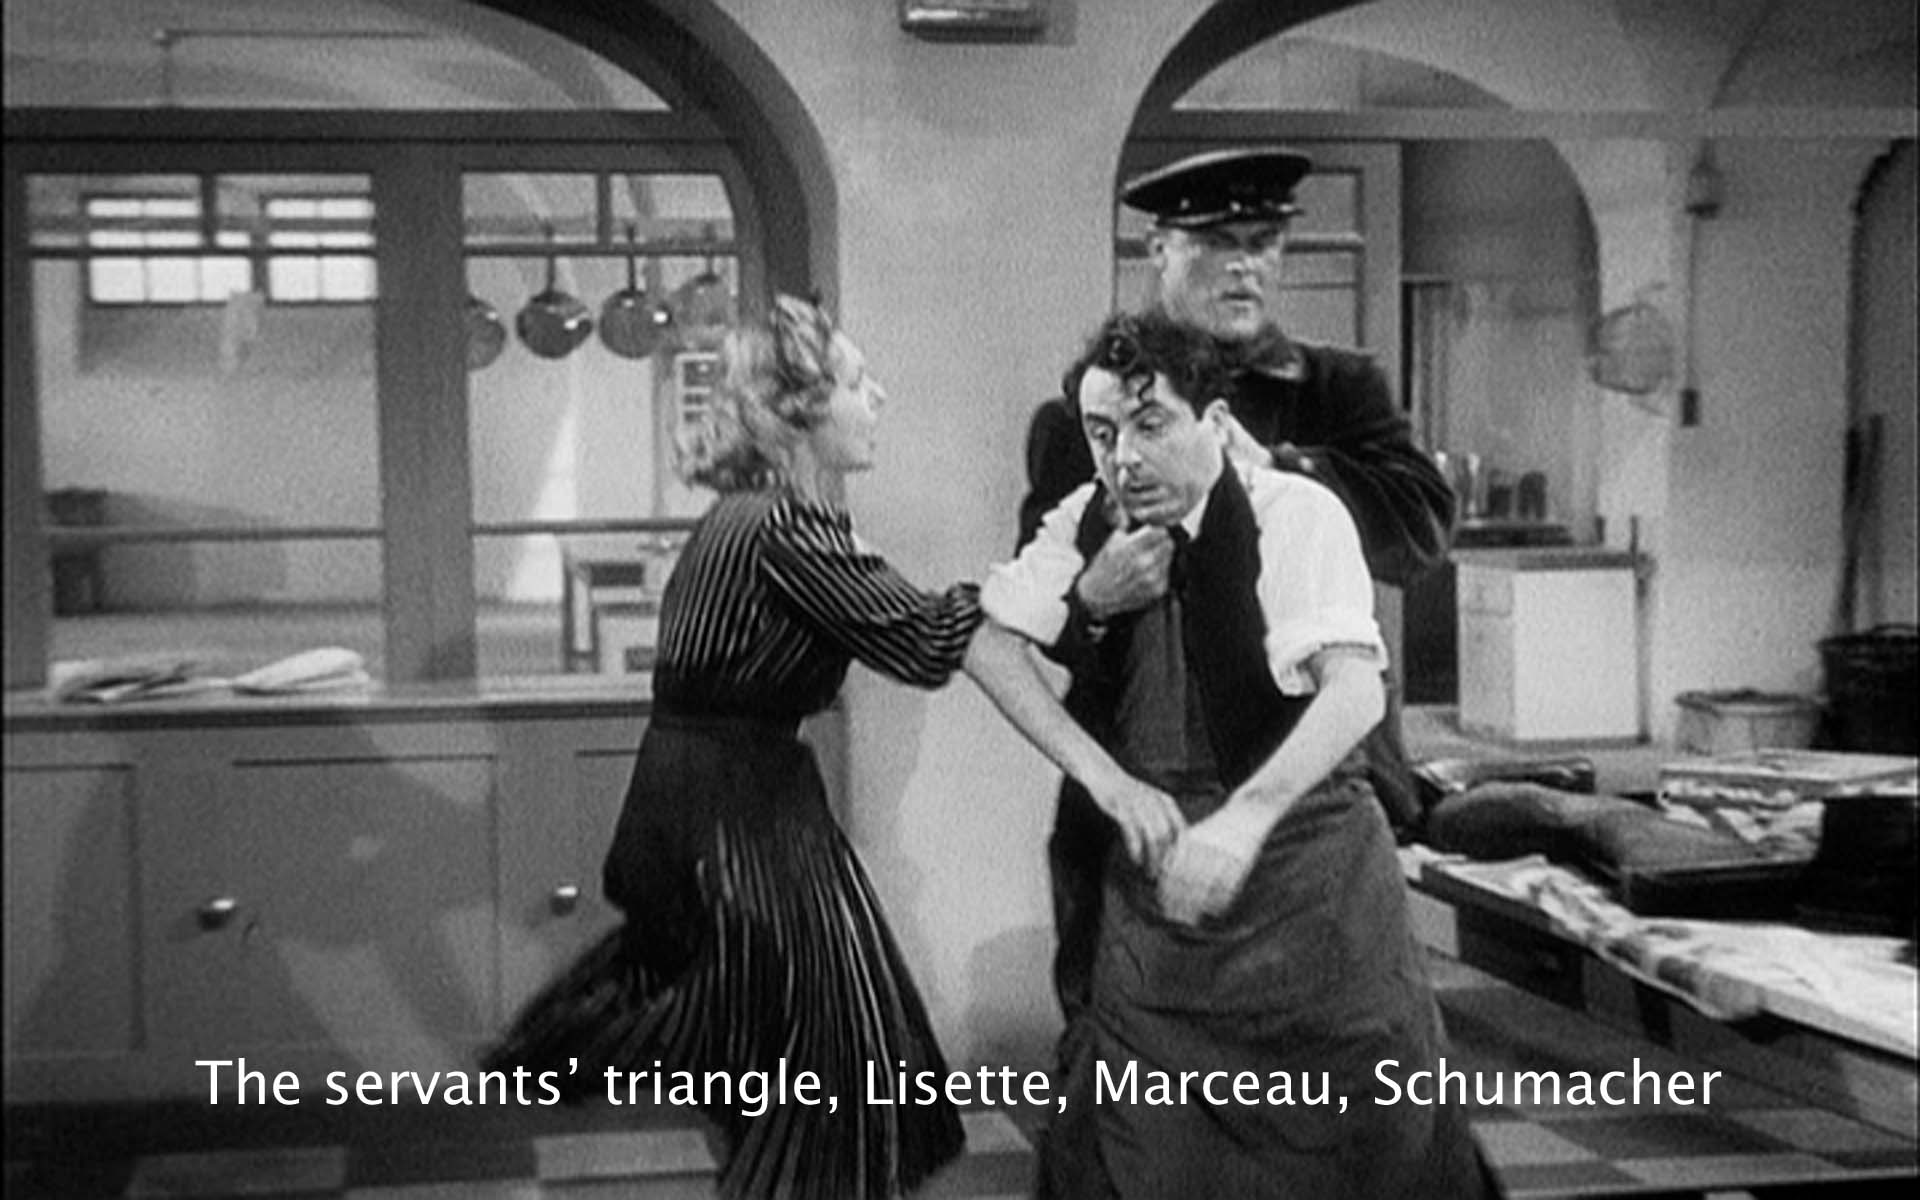 Clássicos do Cinema - A Regra do Jogo é um filme de 1939 dirigido